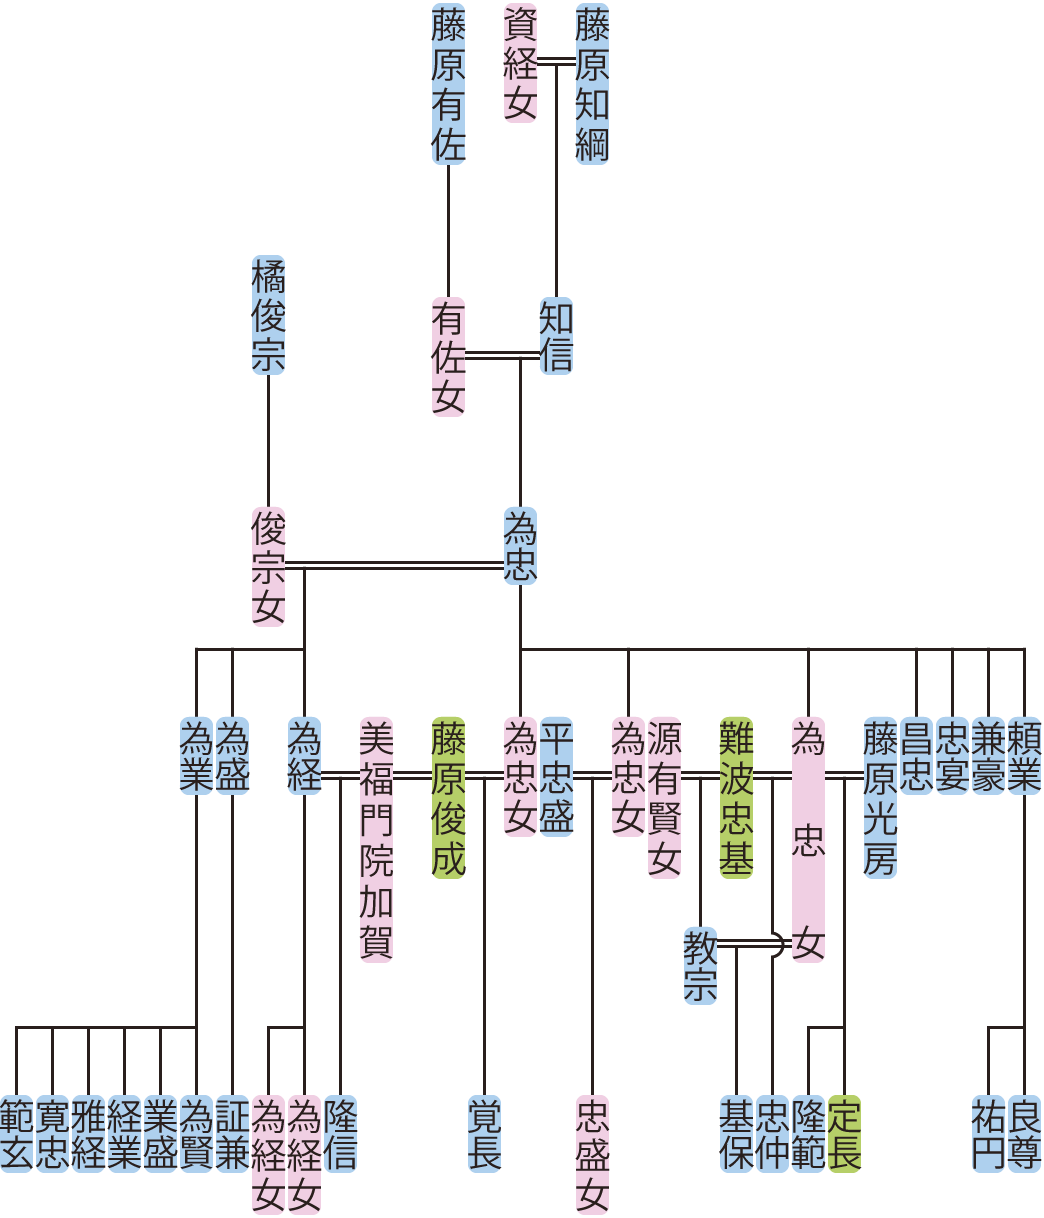 藤原為忠の系図